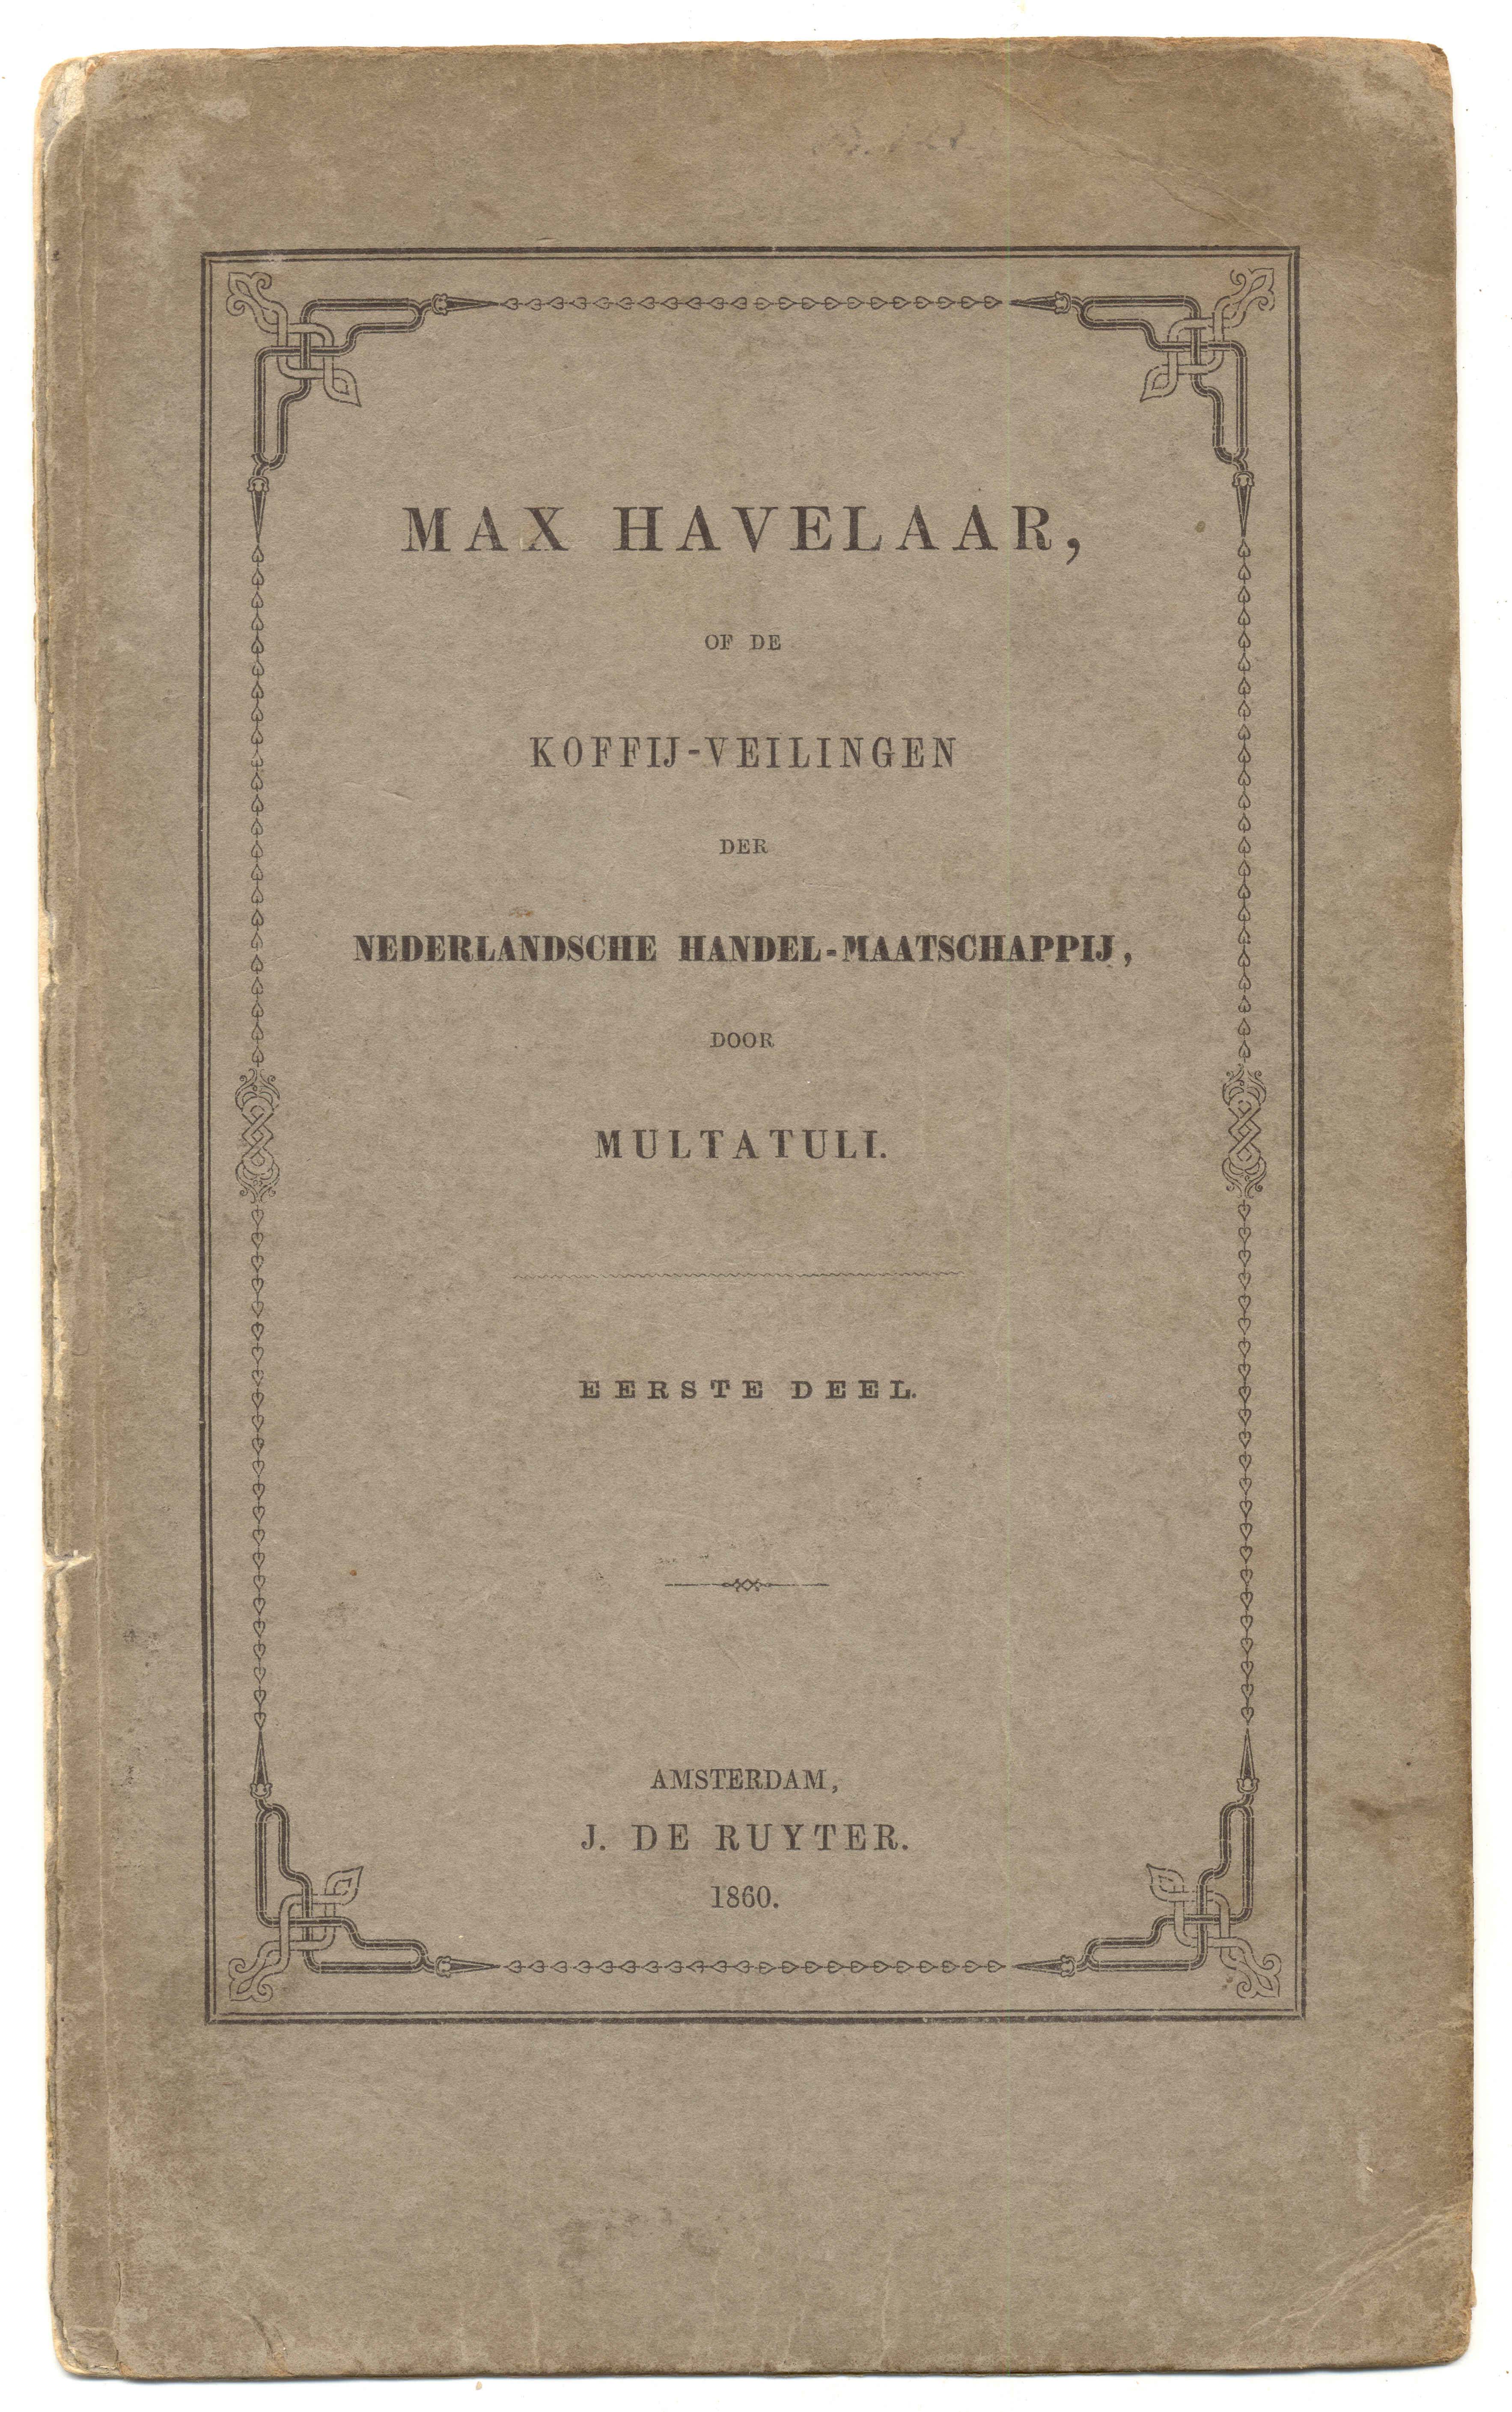 Cover boek Max Havelaar door Multatuli, 1860. Wikimedia Commons